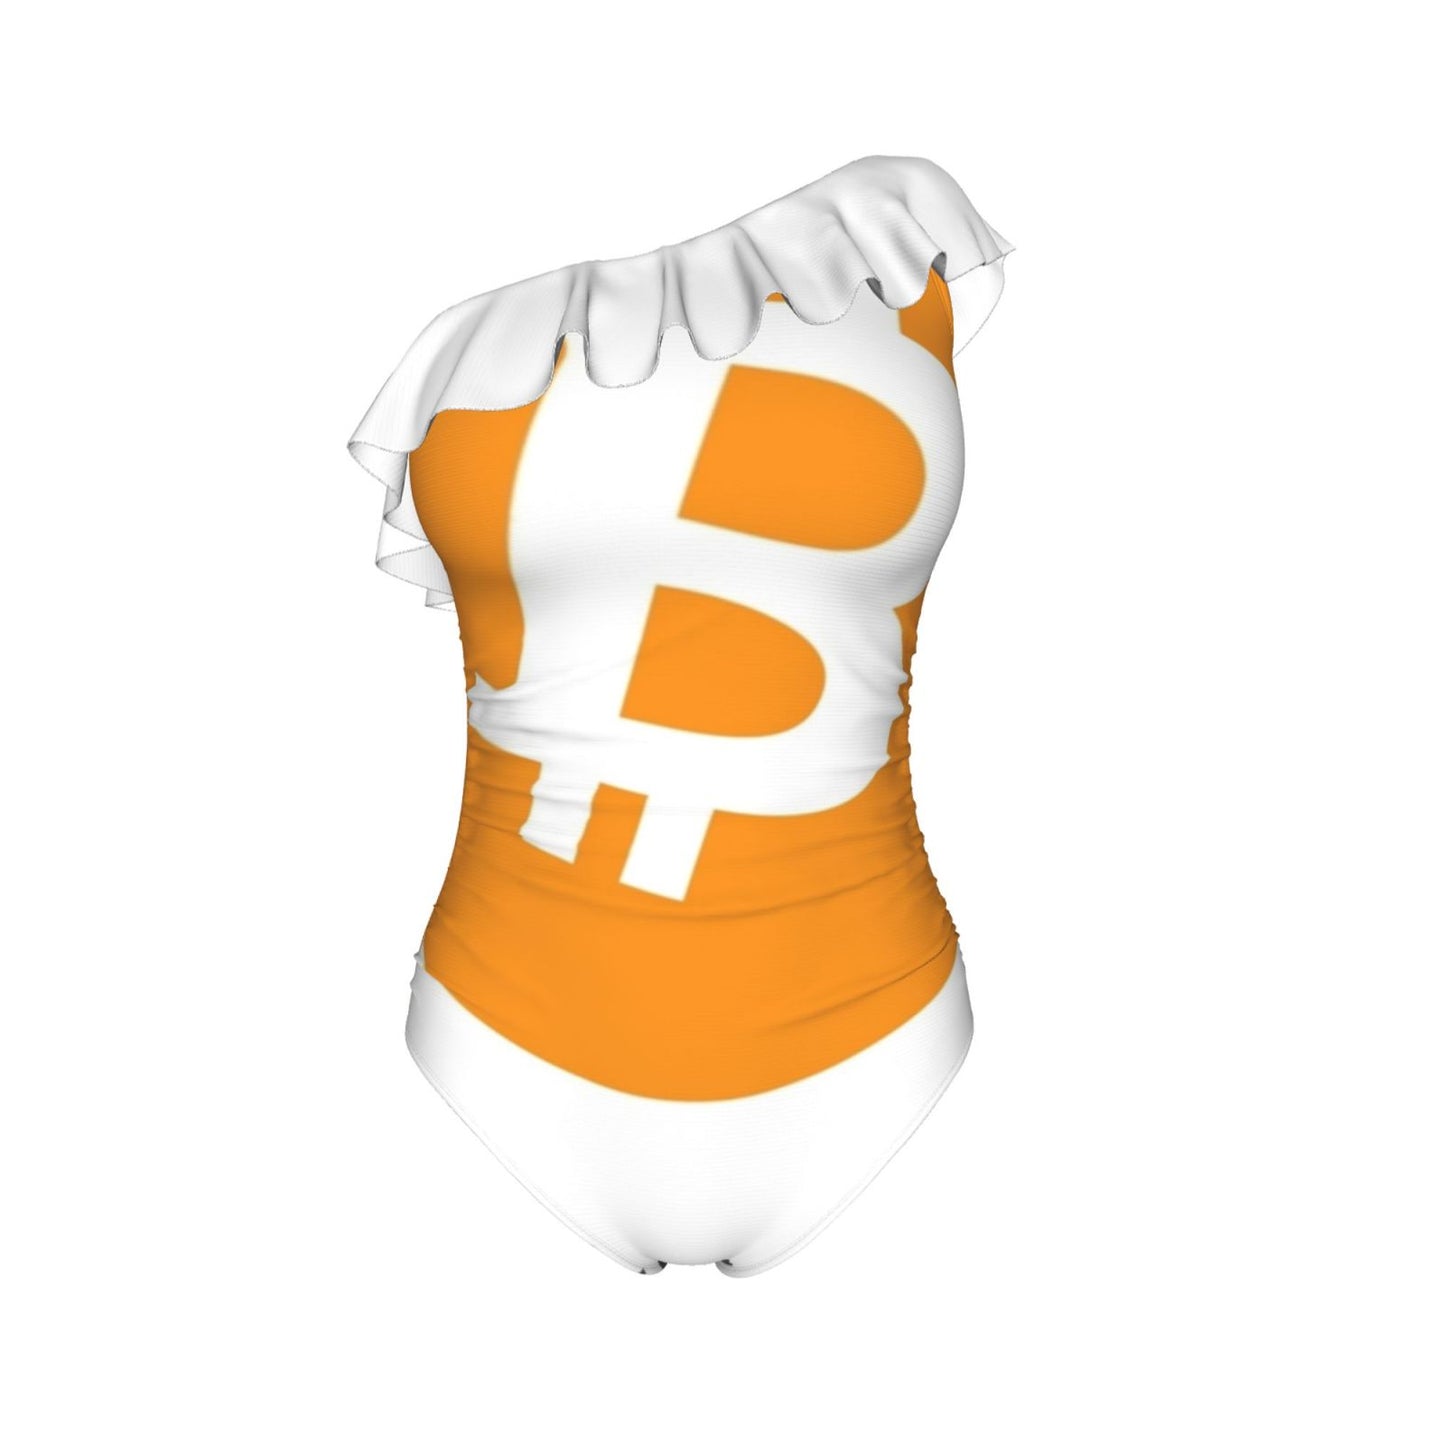 New Bitcoin themed swimwear